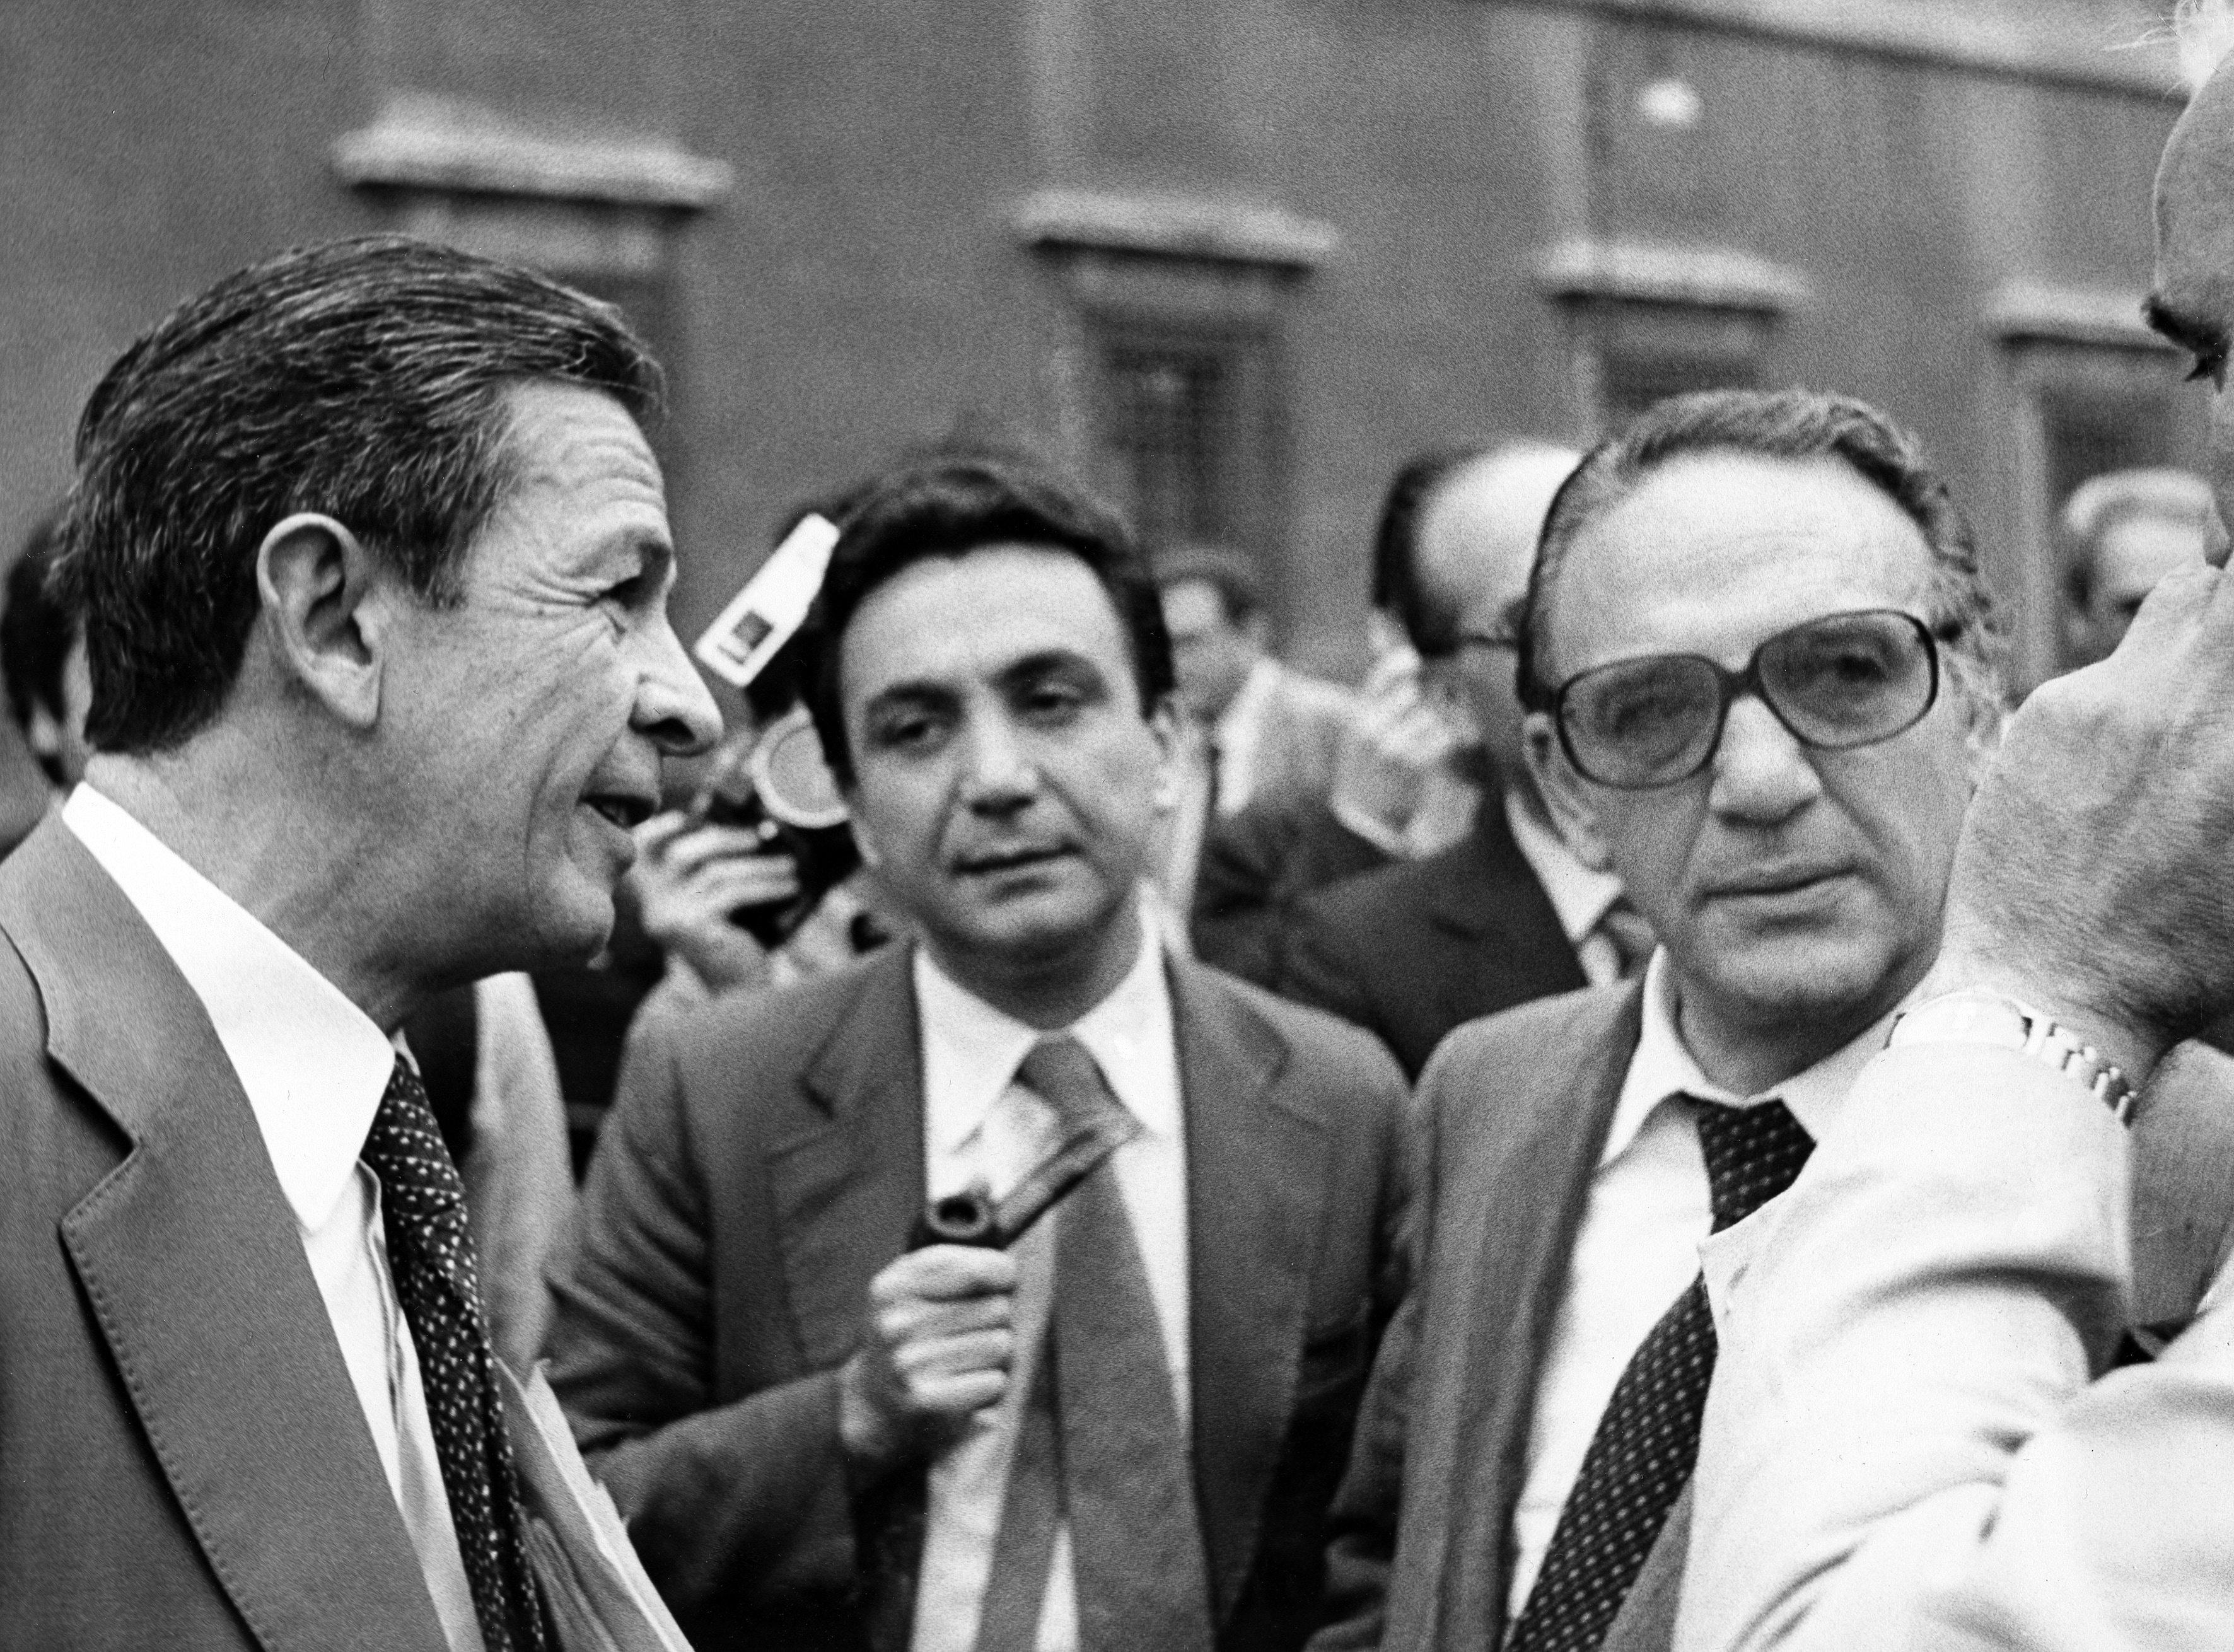 Insieme a Paolo Emilio Ciofi (al centro) e al sindaco di Roma Luigi Petroselli sulla destra), nel 1976